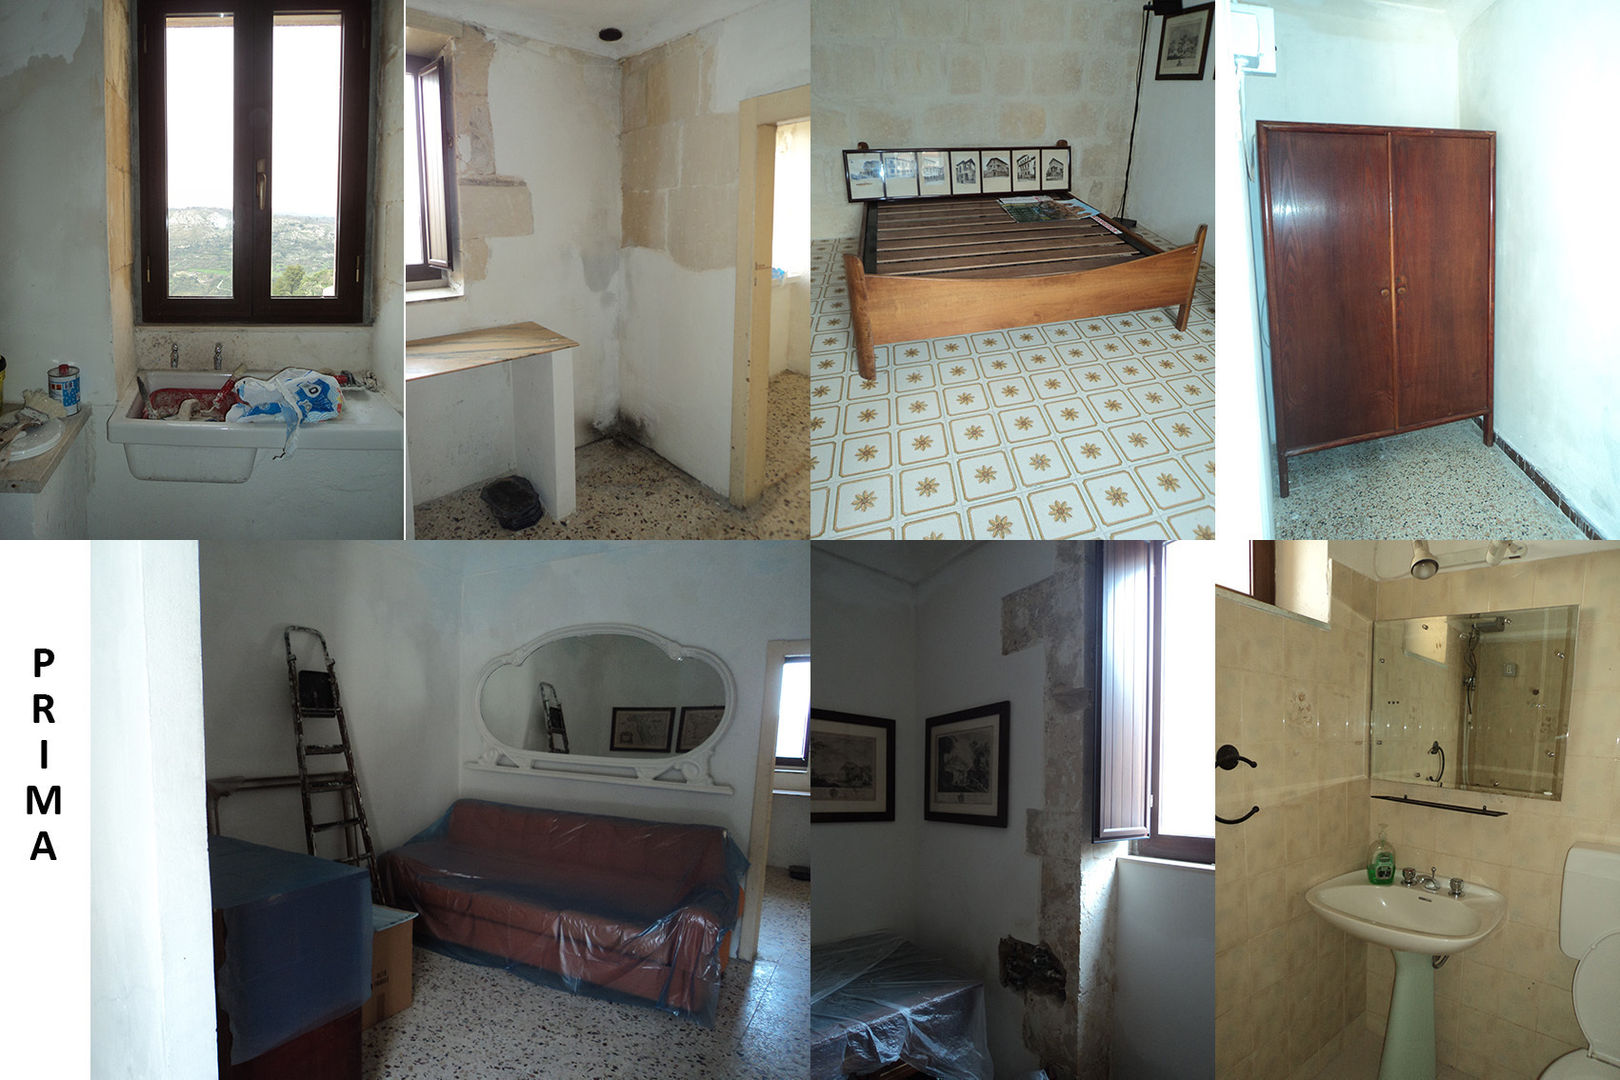 Home staging per casa vacanza in Sicilia, Boite Maison Boite Maison Casas de estilo mediterráneo